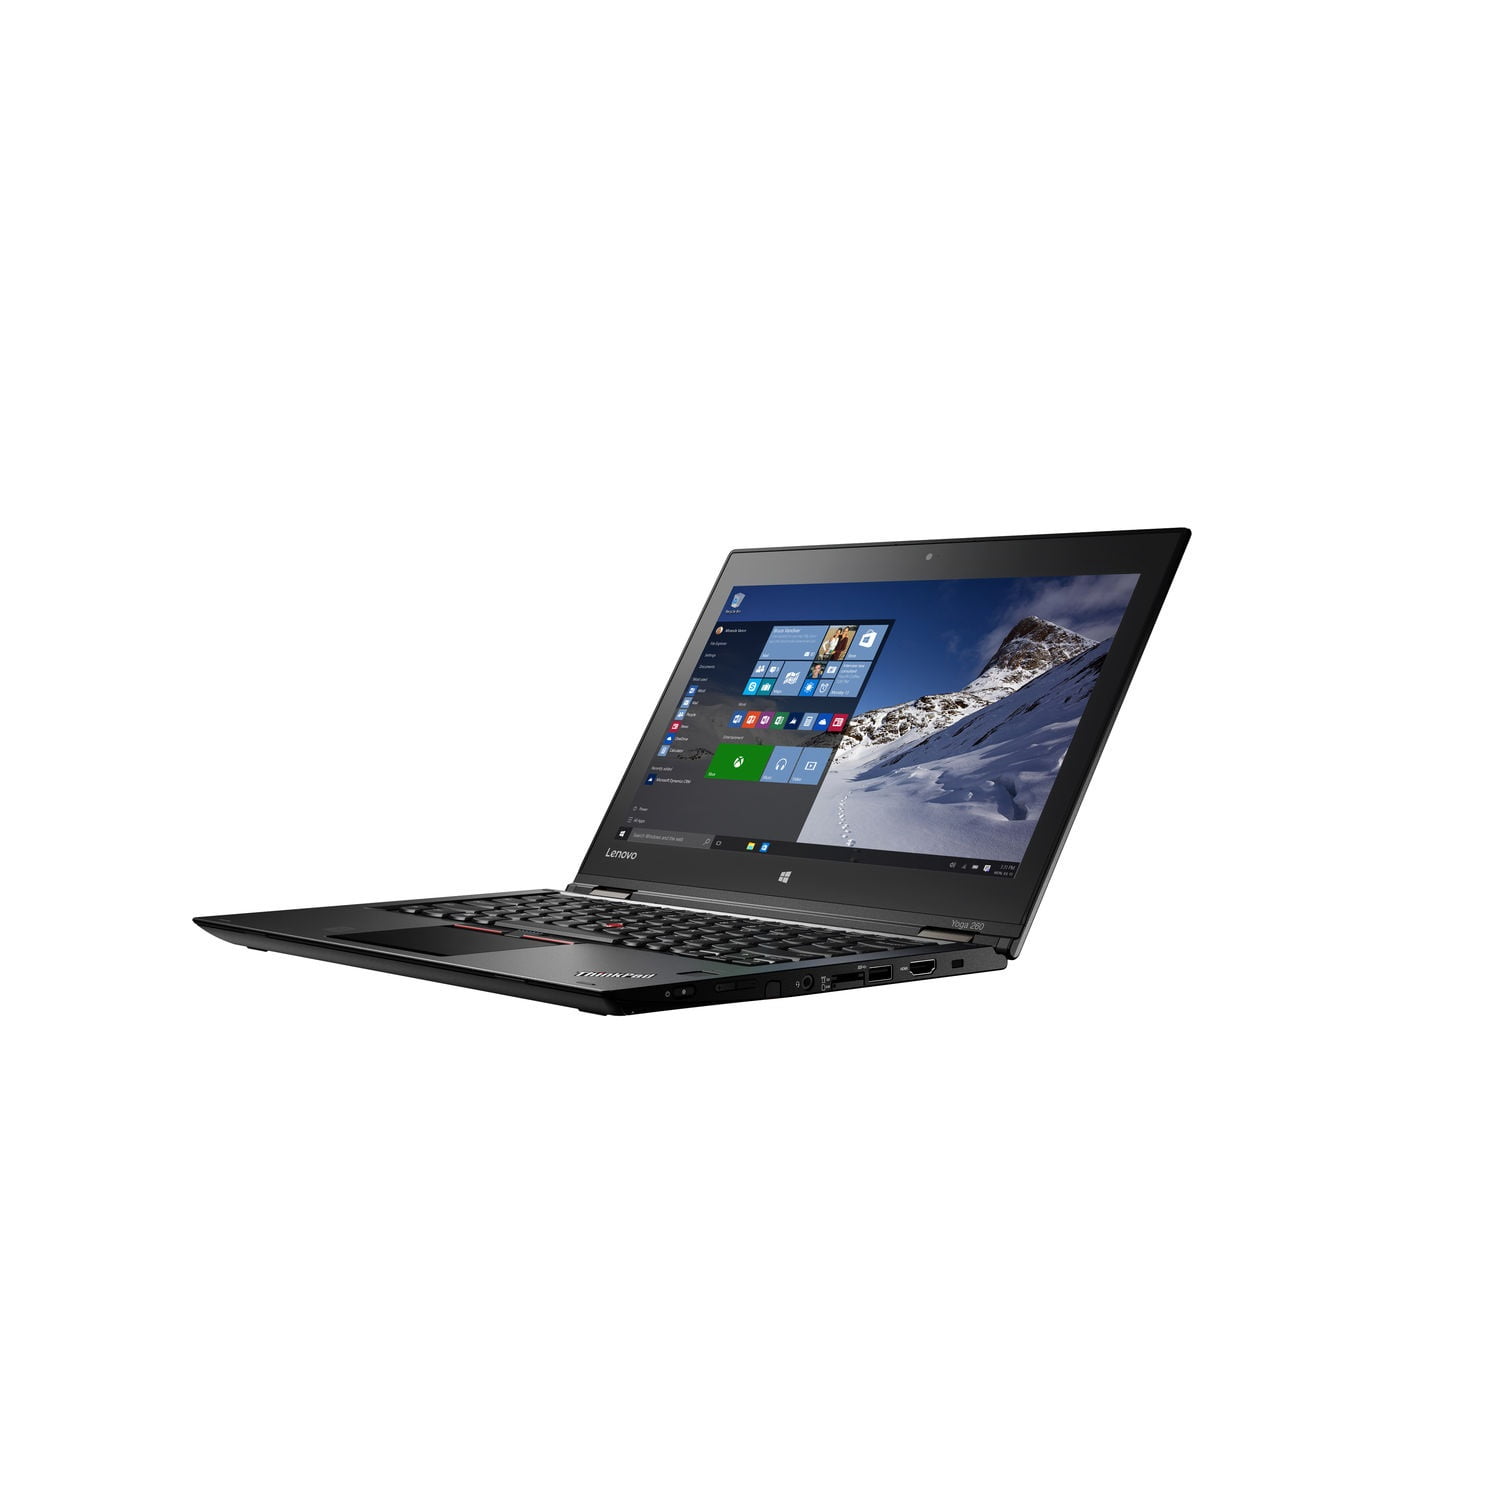 Lenovo ThinkPad Yoga 260 - - Core i7 - 8 GB RAM - 256 GB SSD - Walmart.com